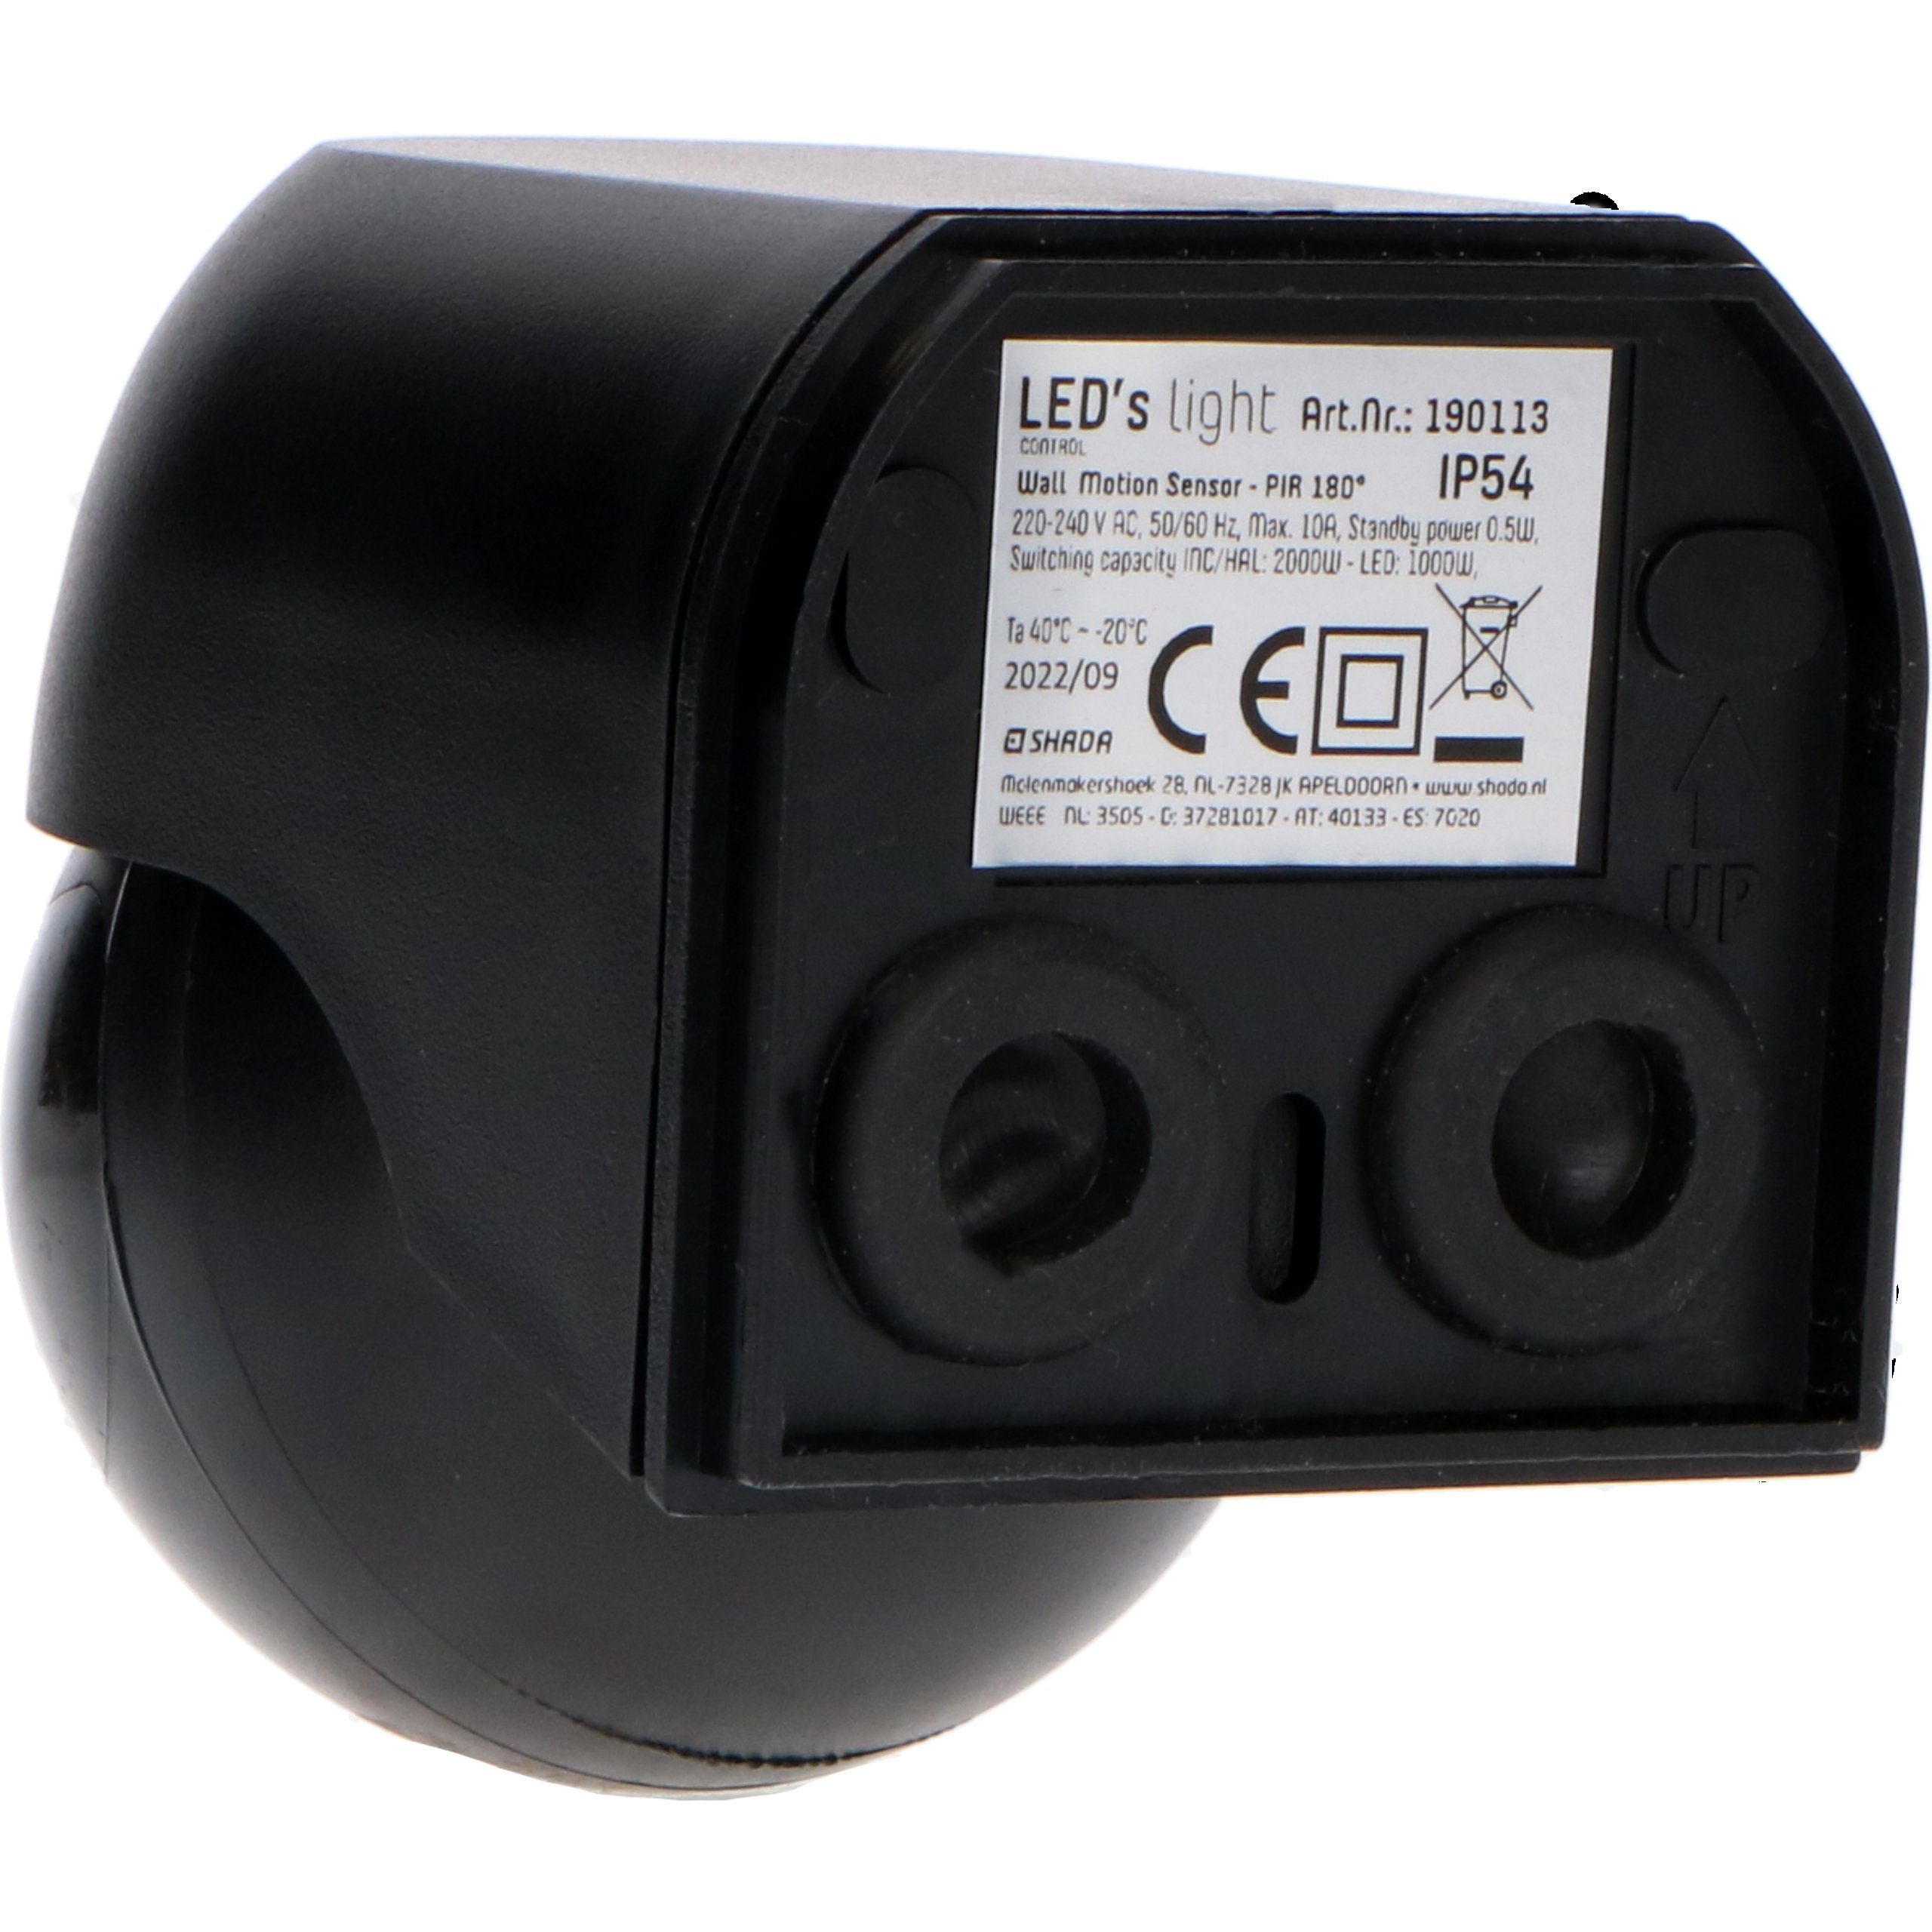 LED's light Bewegungsmelder Aufputz-Bewegungsmelder, 180° 0190114 IP54 schwarz mit Fernbedienung